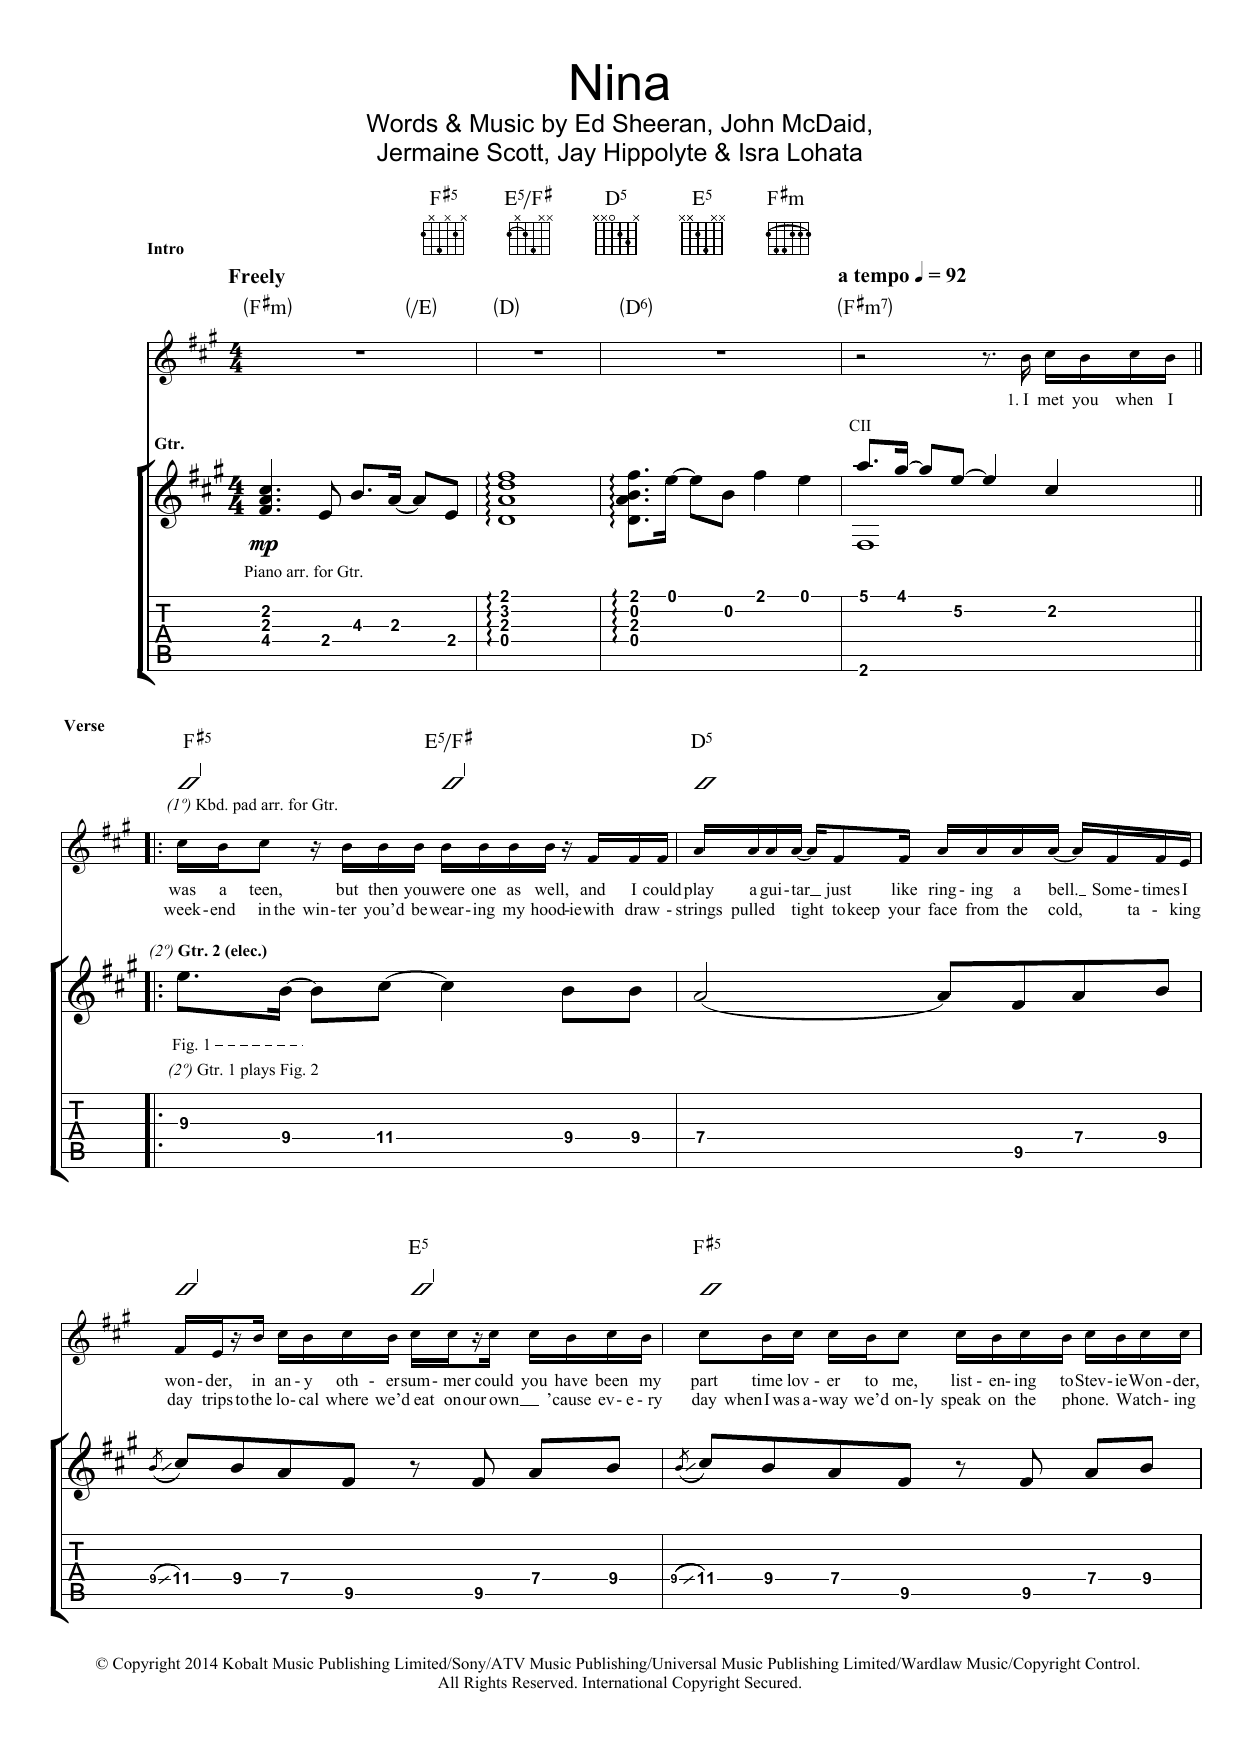 Ed Sheeran Nina Sheet Music Notes & Chords for Ukulele - Download or Print PDF